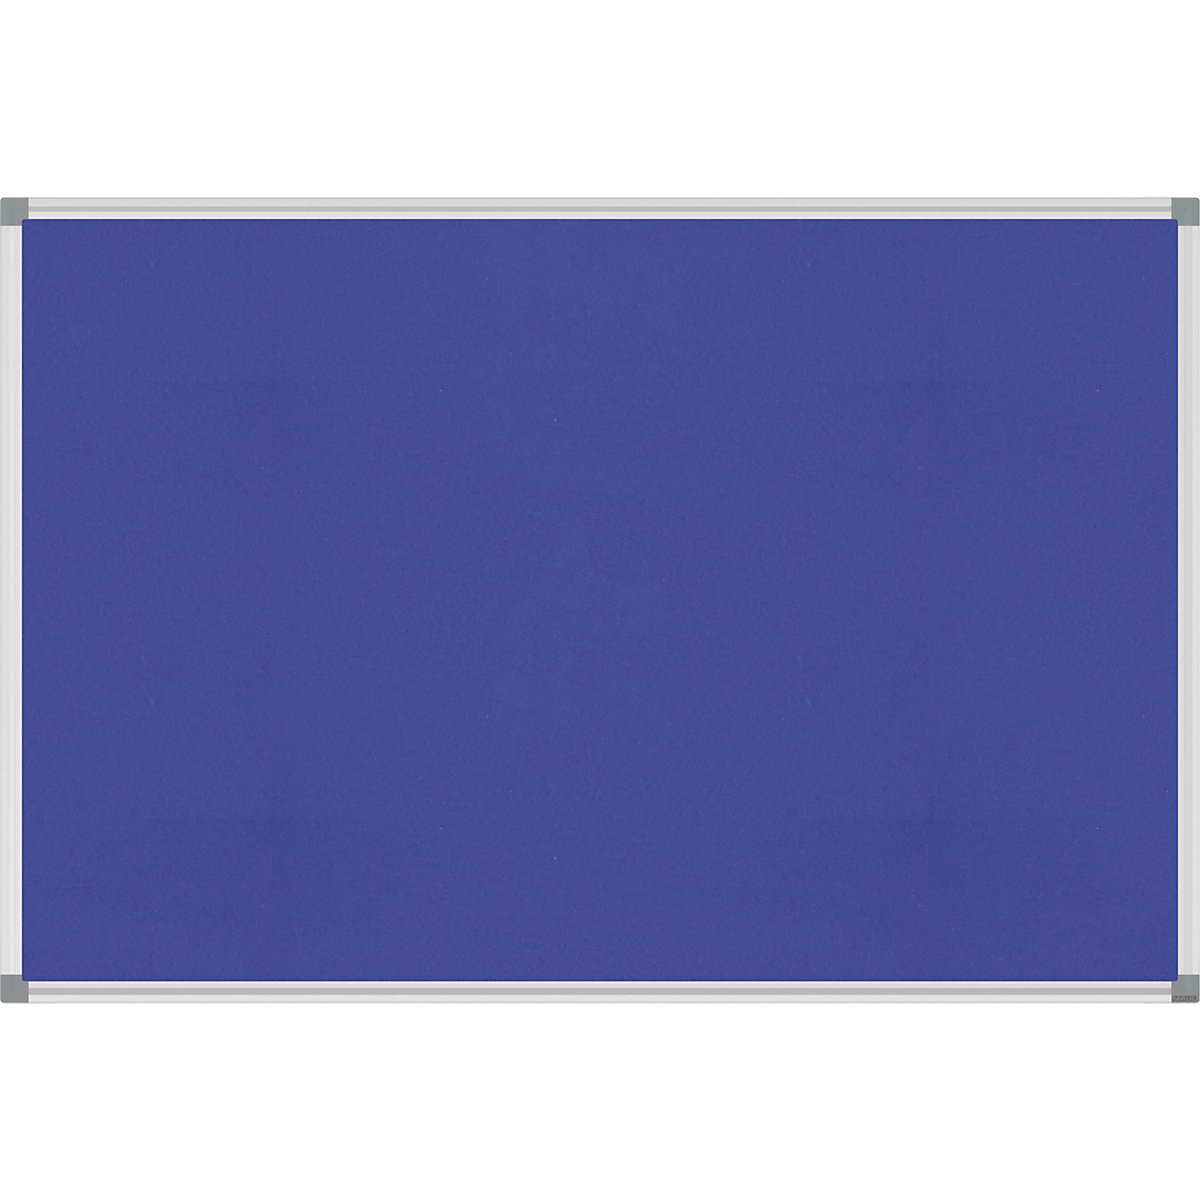 MAUL – Nástěnka STANDARD, stabilní, textil, modrá, š x v 1800 x 900 mm